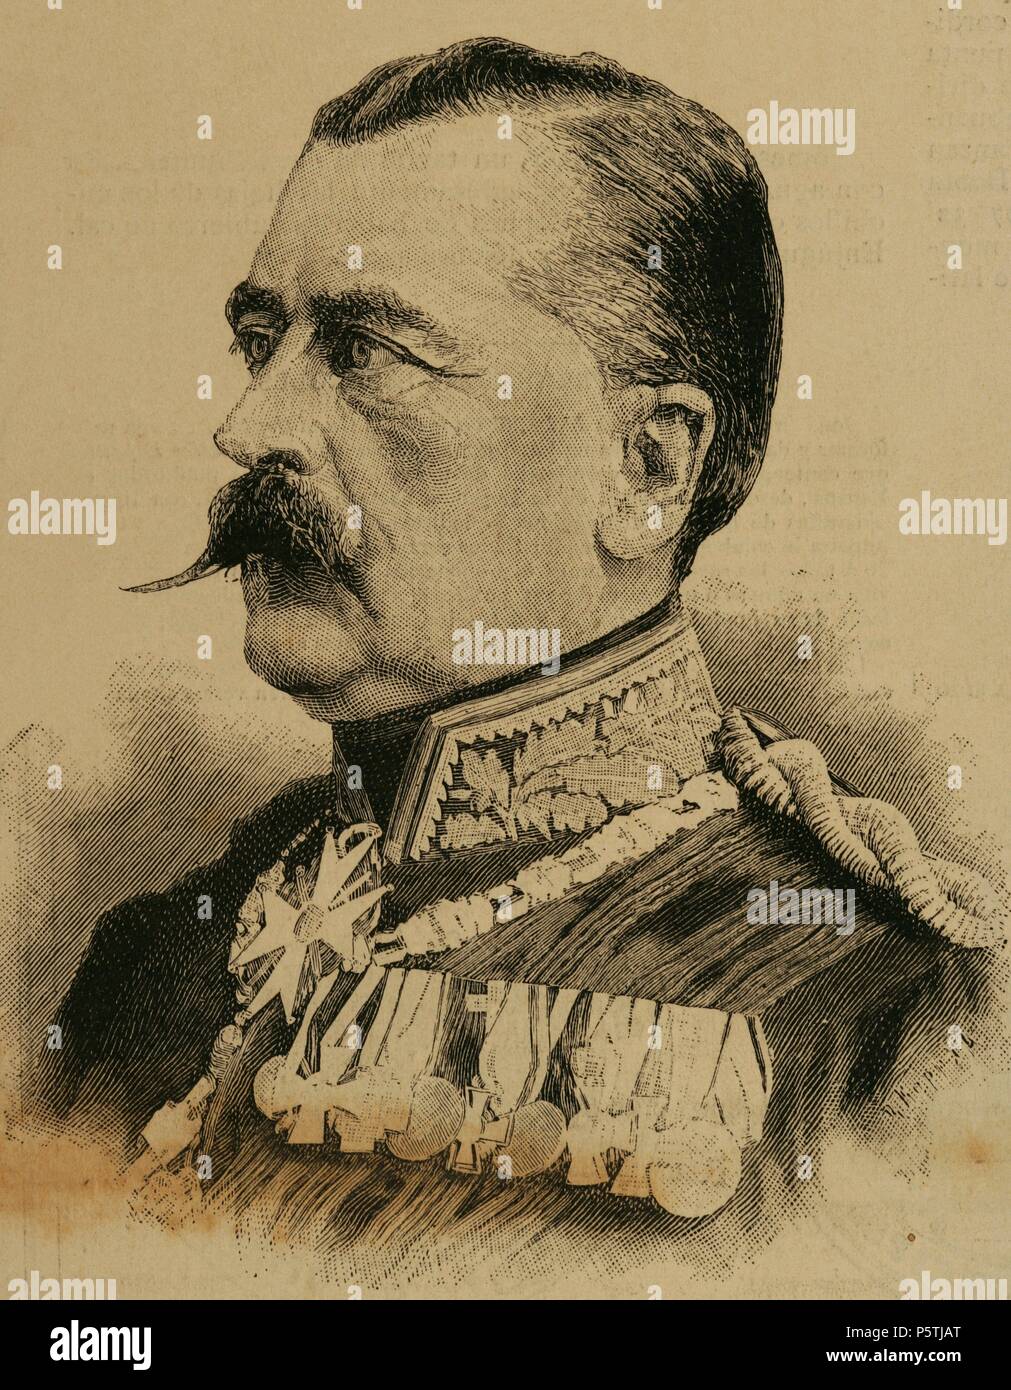 Il principe Carlo Antonio di Hohenzollern-Sigmaringen (1811-1885). Era a capo della Casa Regnante di Hohenzollern-Sigmaringen, Hohenzollern dal 1869 e primo ministro della Prussia. Incisione. La spagnolo e illustrazione americana. 1885. Foto Stock